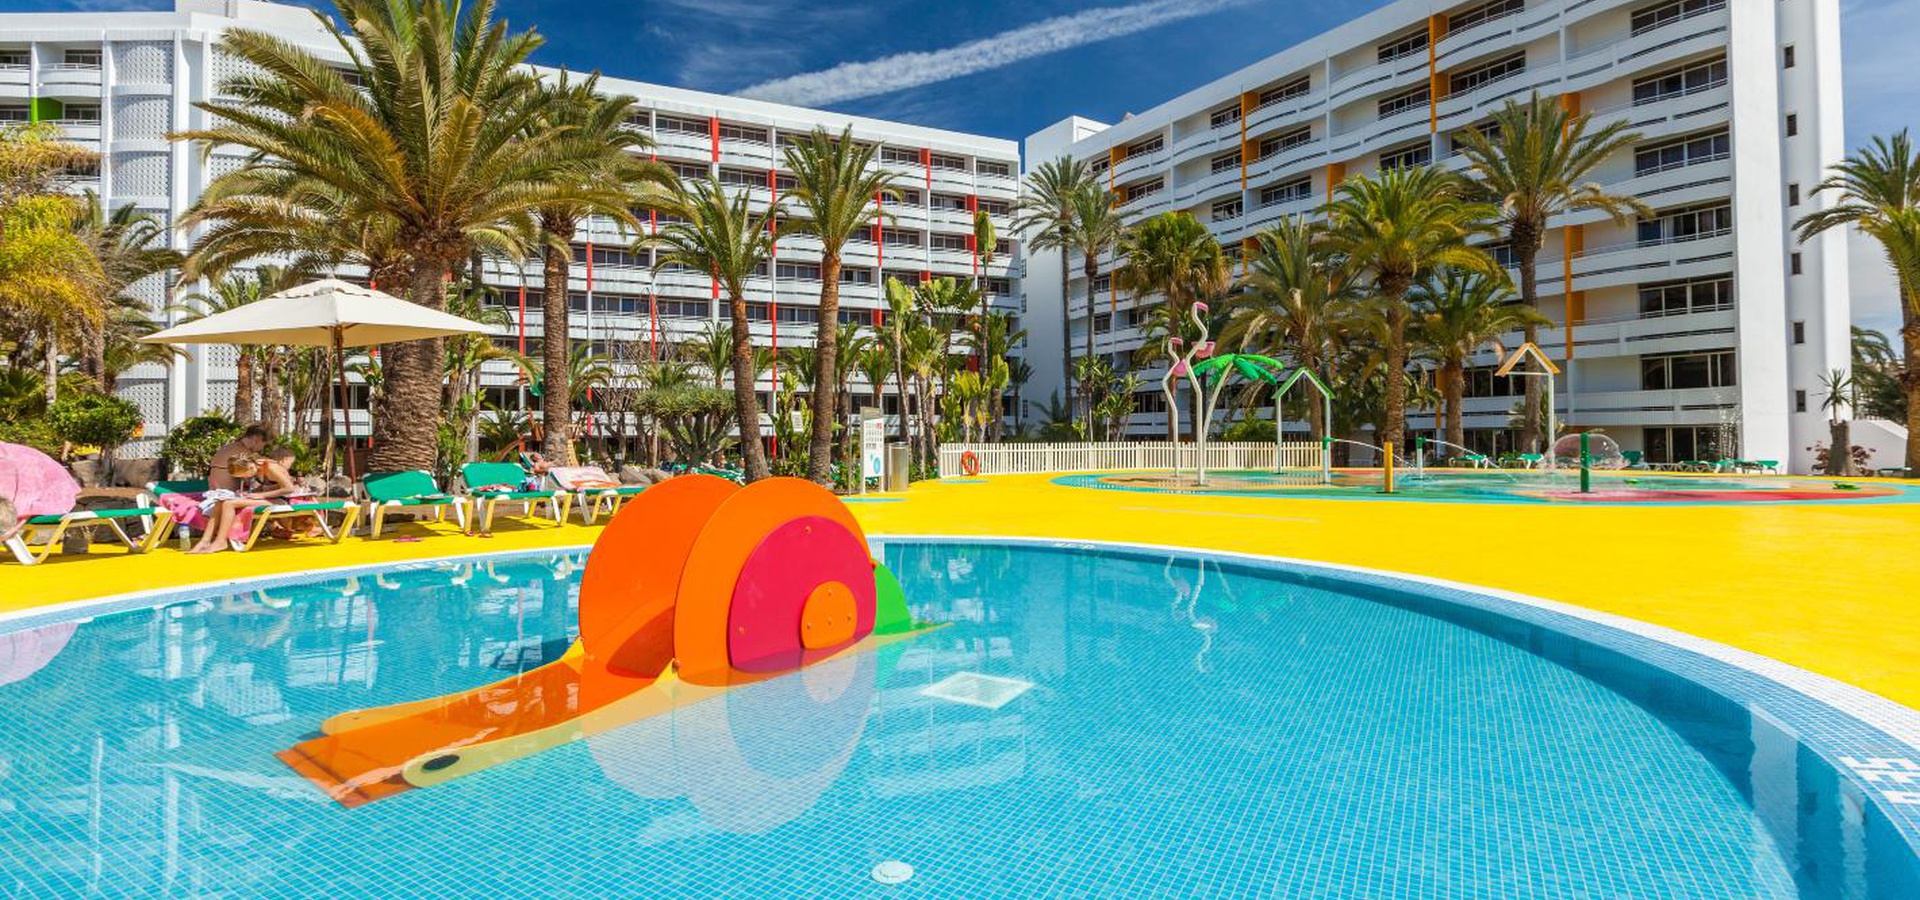 Descubre Abora Buenaventura, el mejor hotel todo incluido - Abora Buenaventura by Lopesan Hotels - Gran Canaria